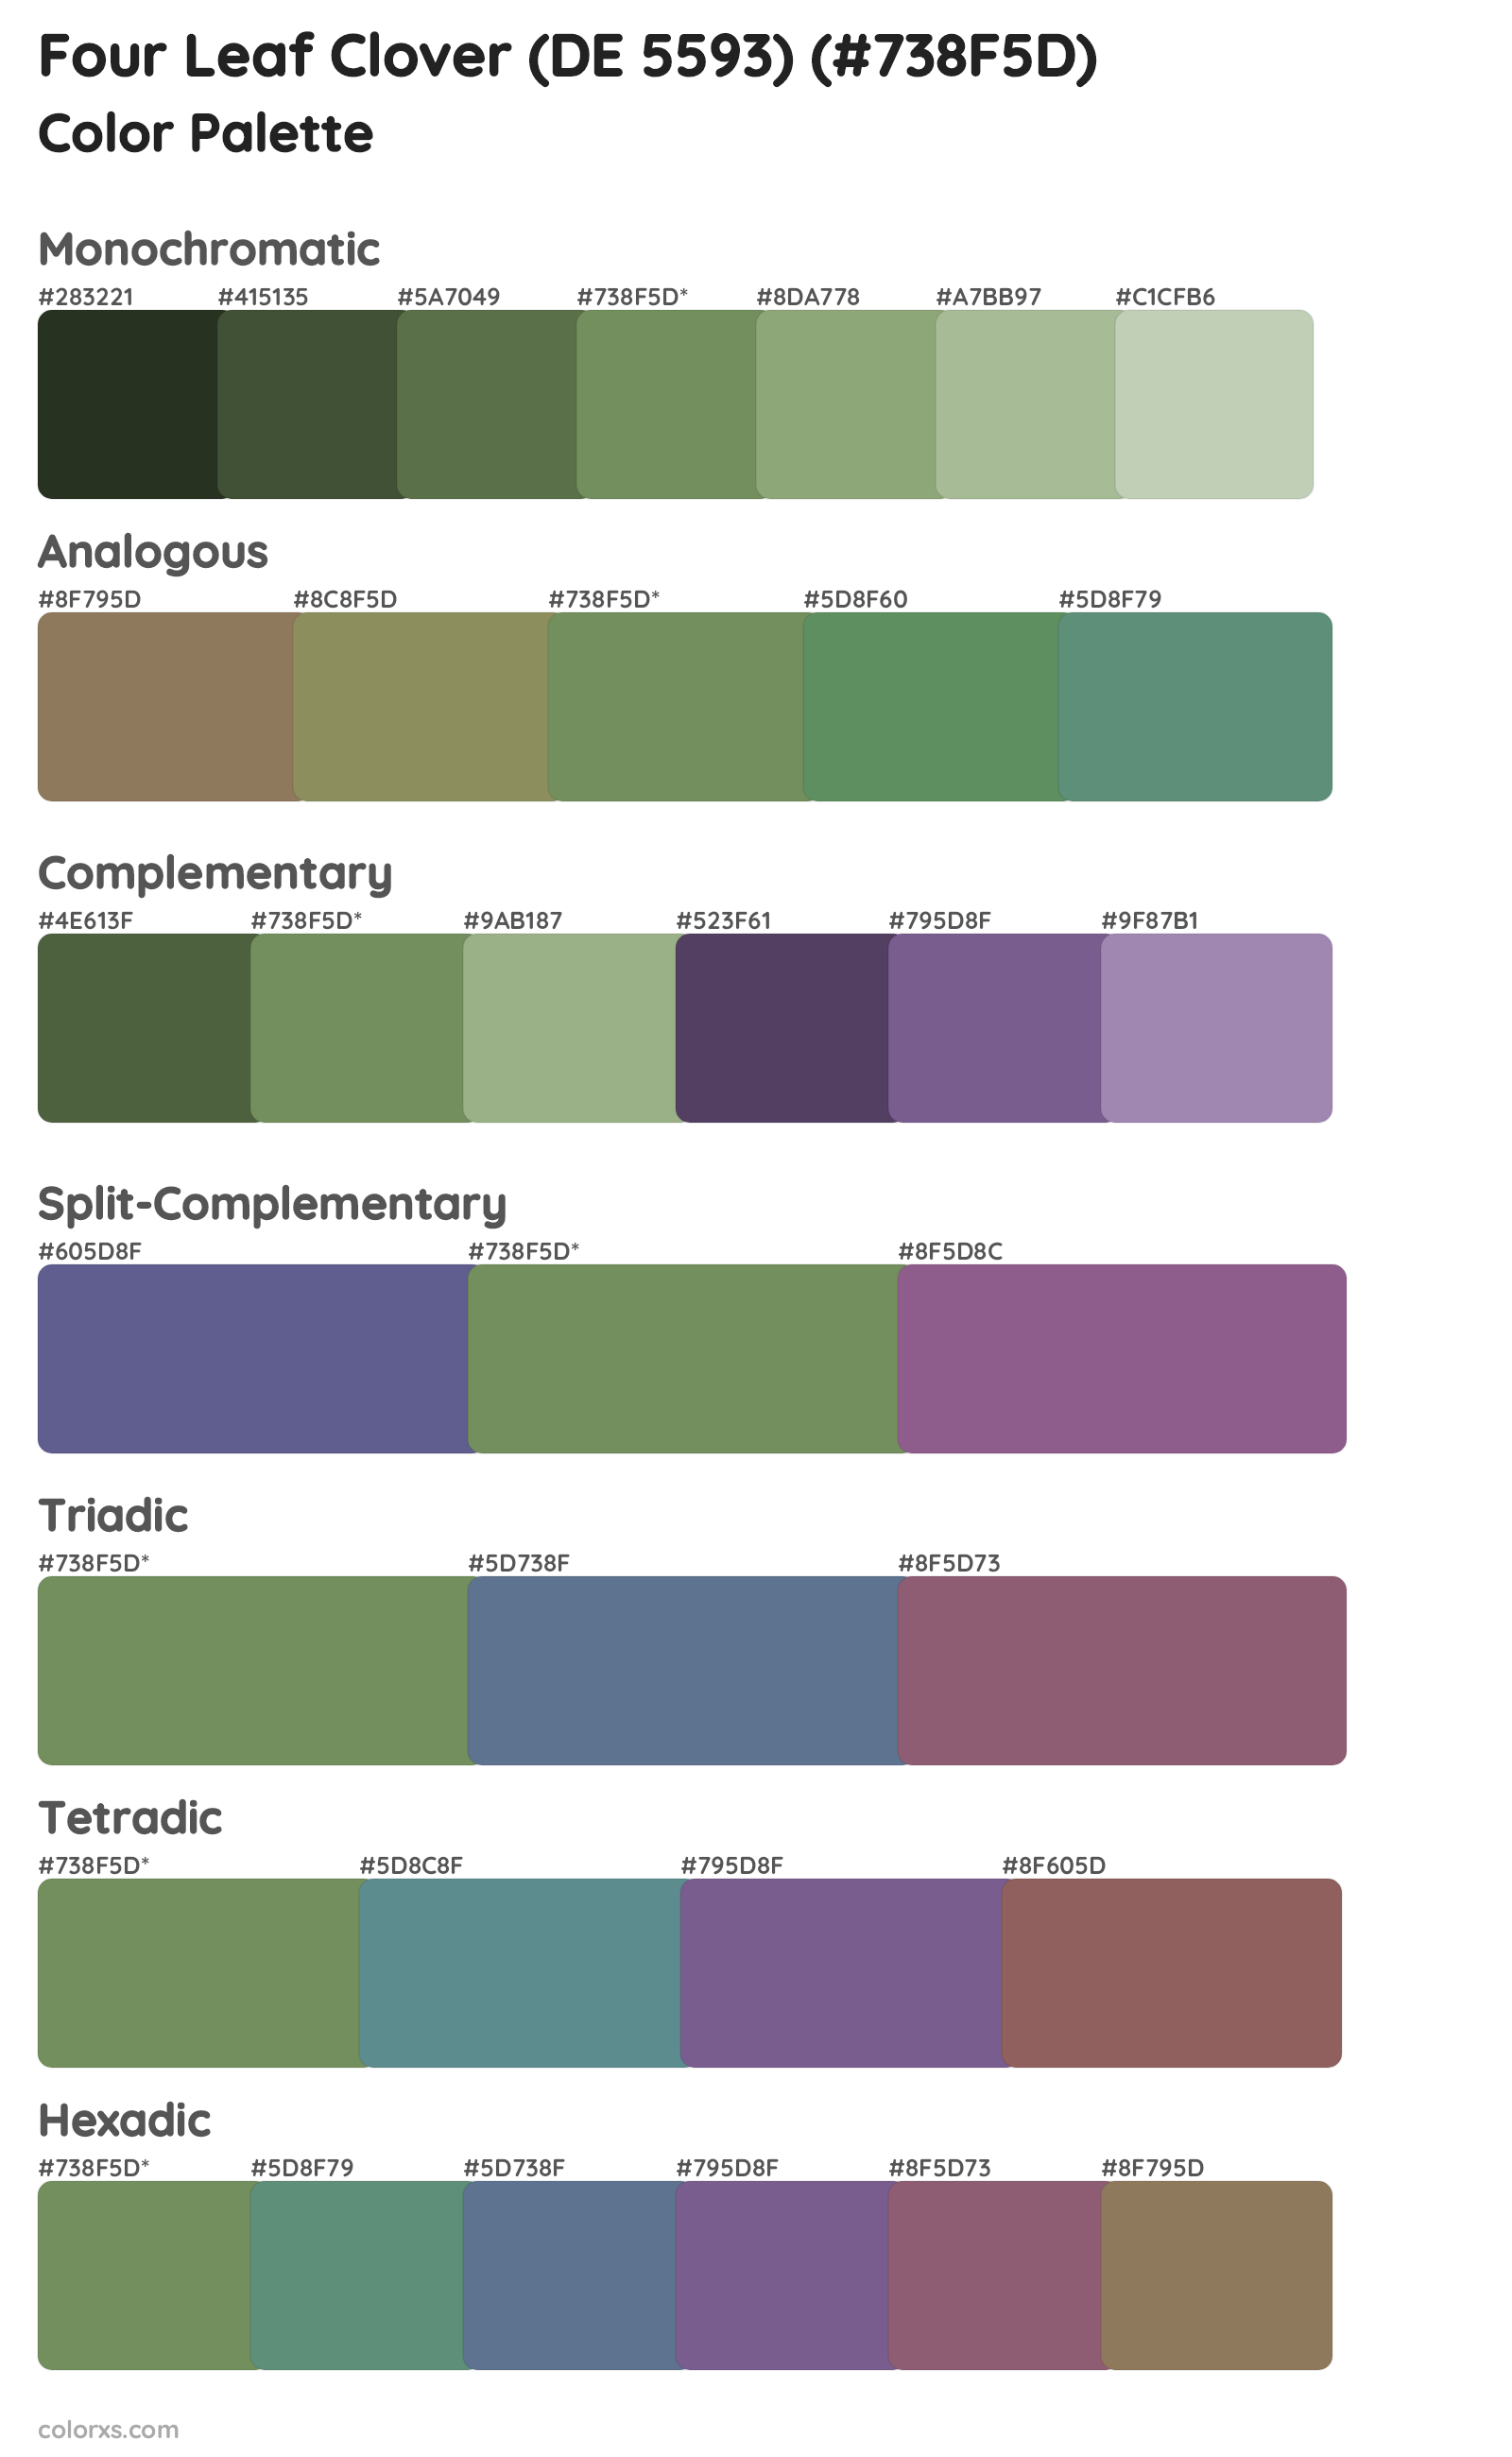 Four Leaf Clover (DE 5593) Color Scheme Palettes